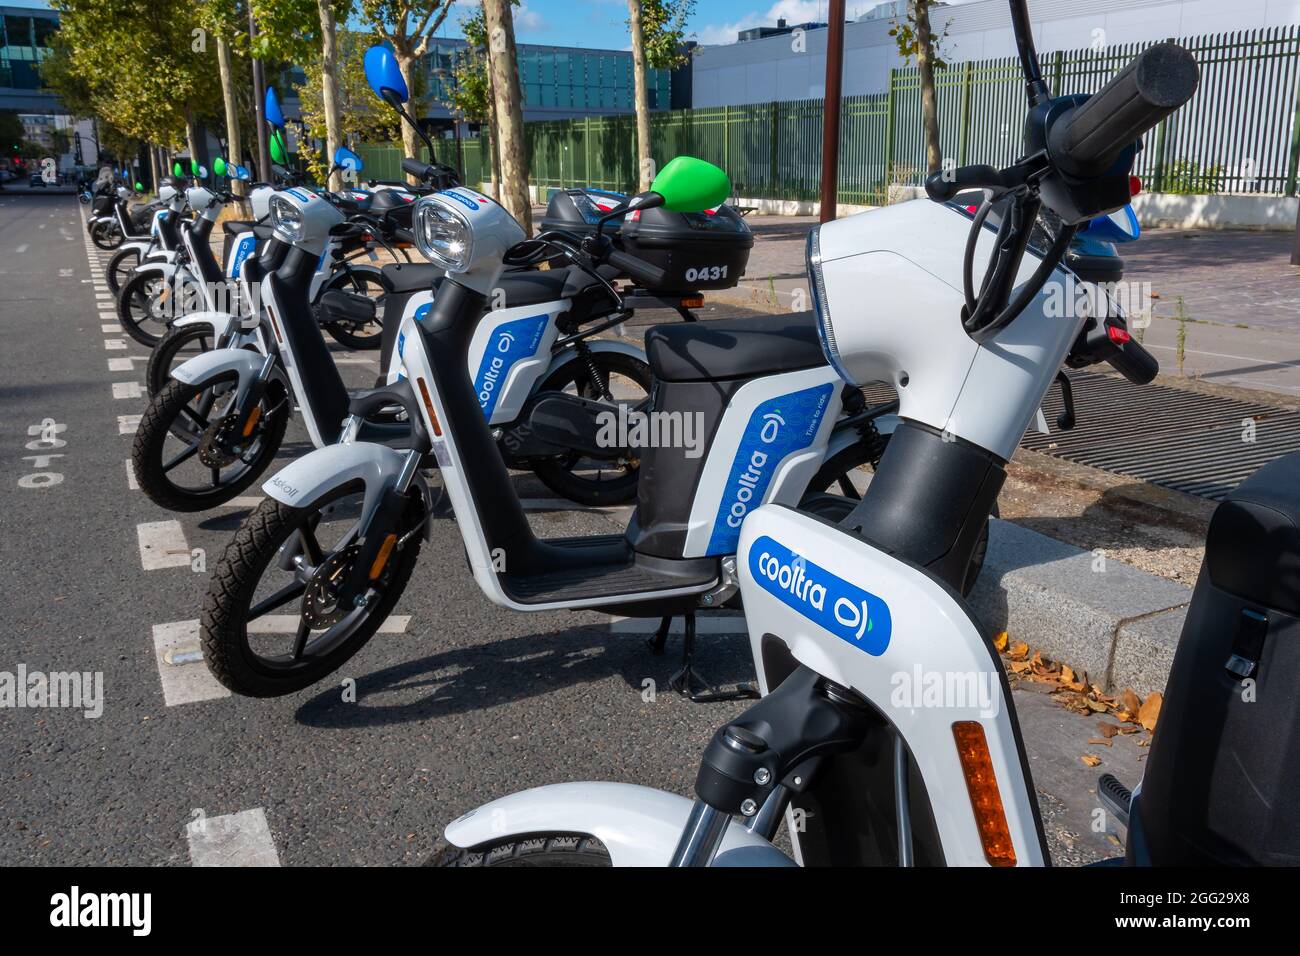 Location de scooters électriques en libre-service de la société espagnole  Cooltra garée dans une rue de Paris, France Photo Stock - Alamy